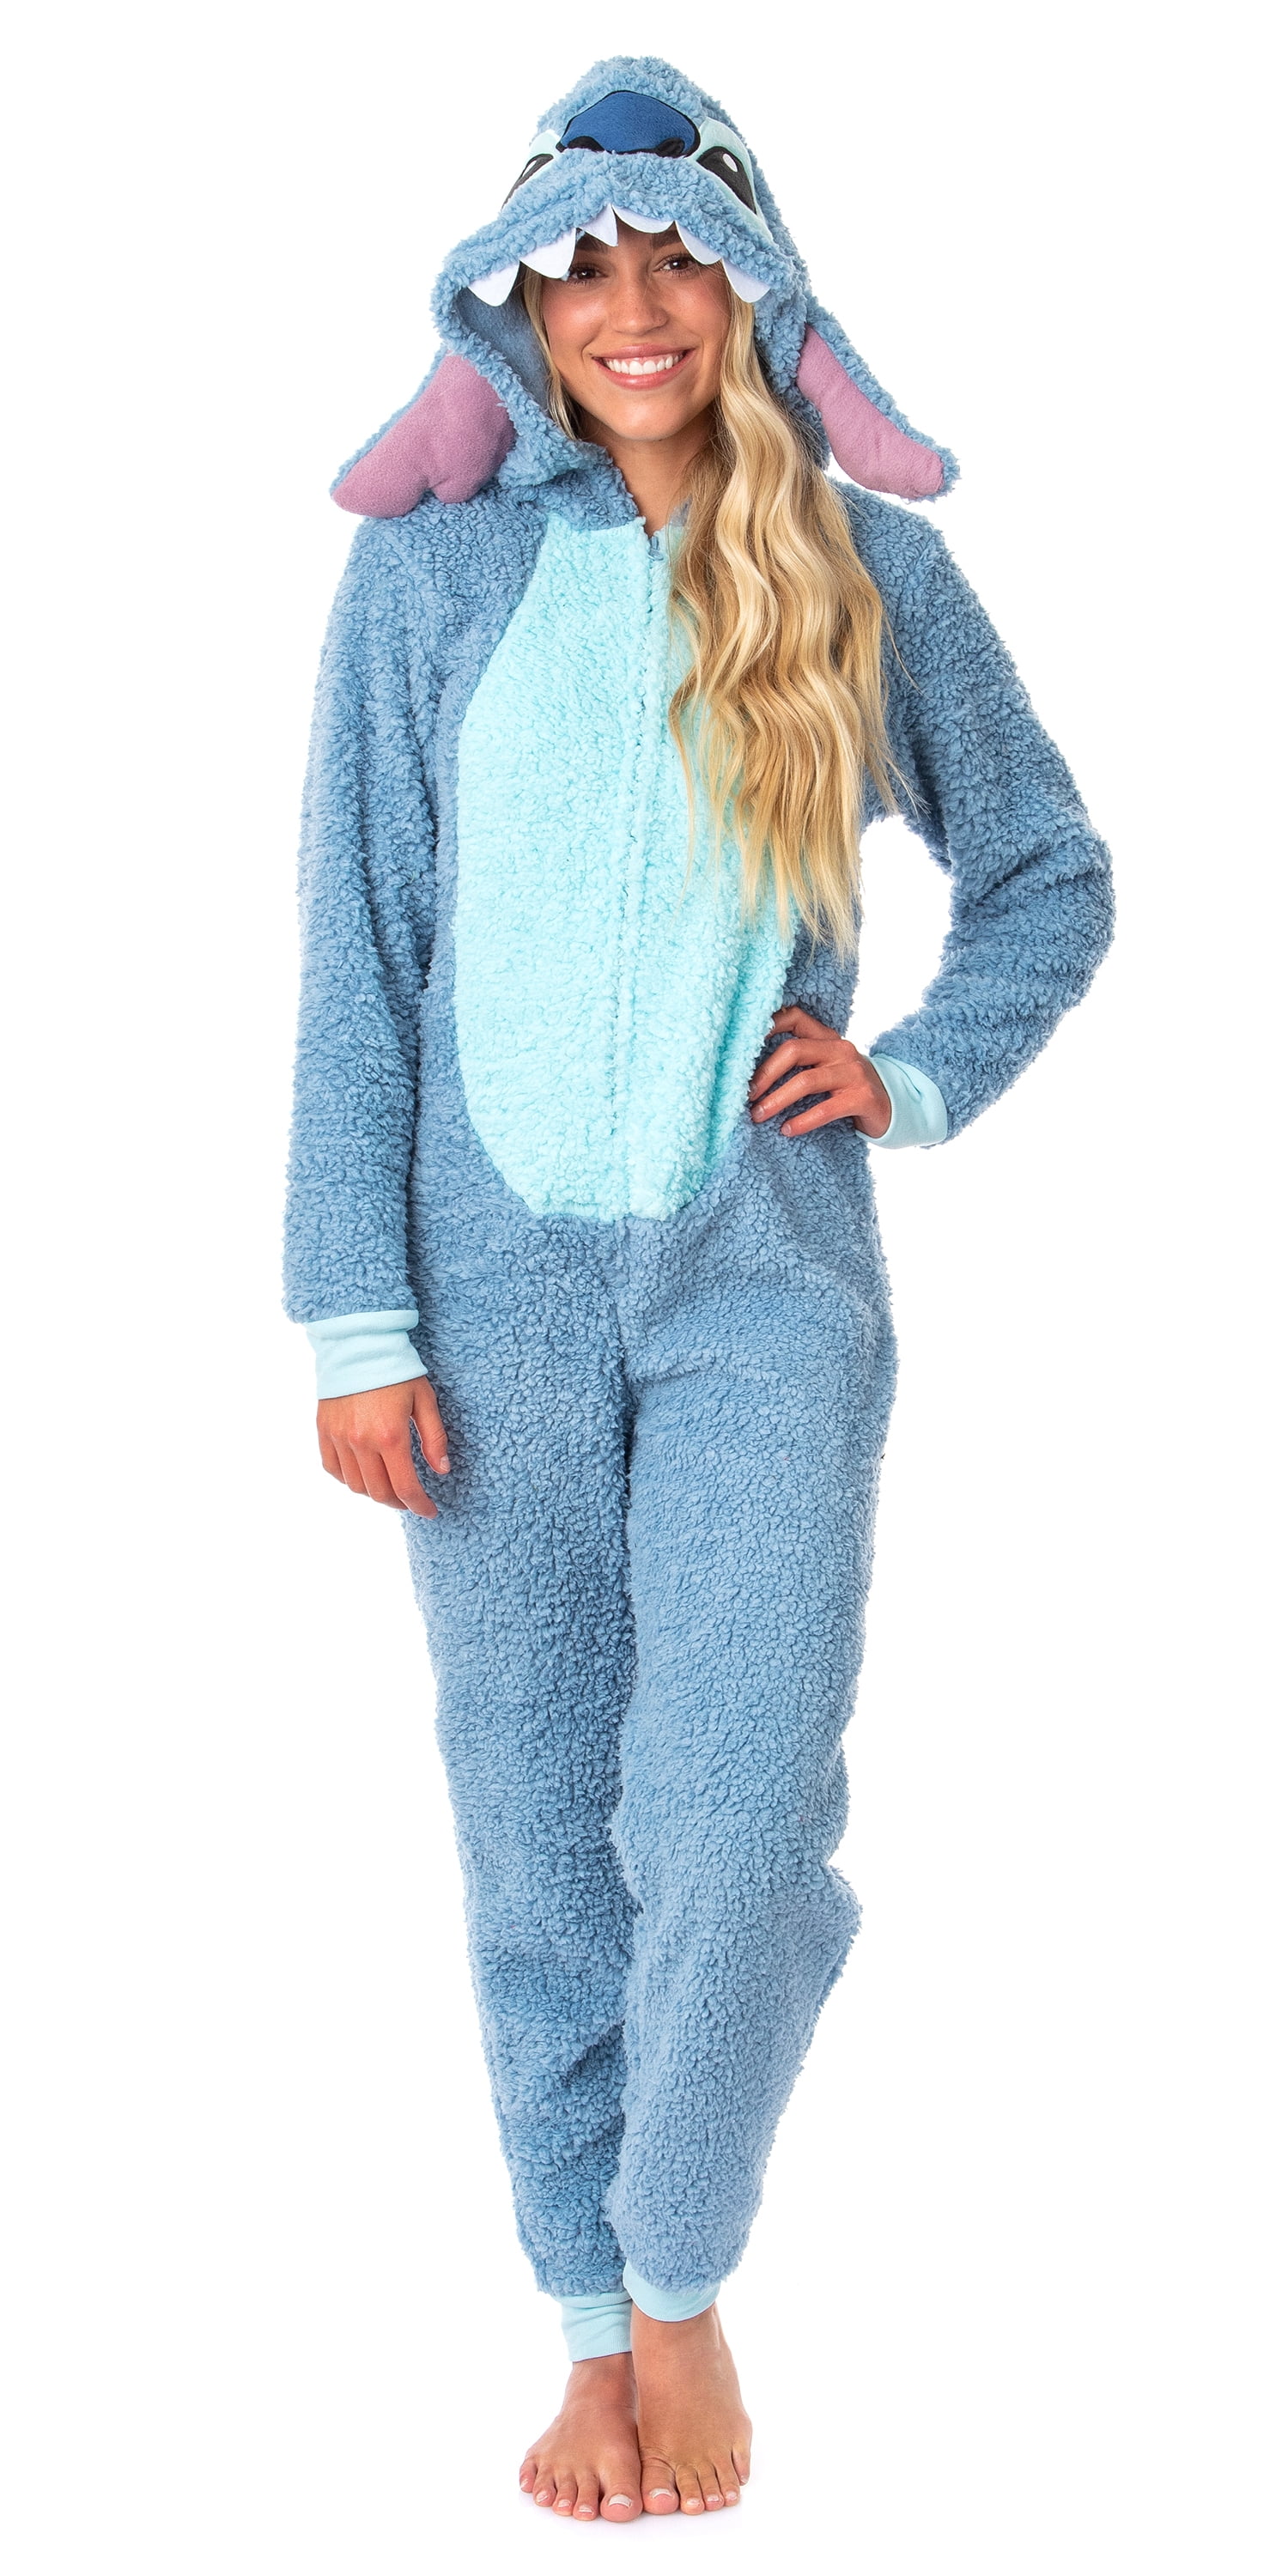 Stitch Fluffy Pyjamas For Kids, Lilo & Stitch